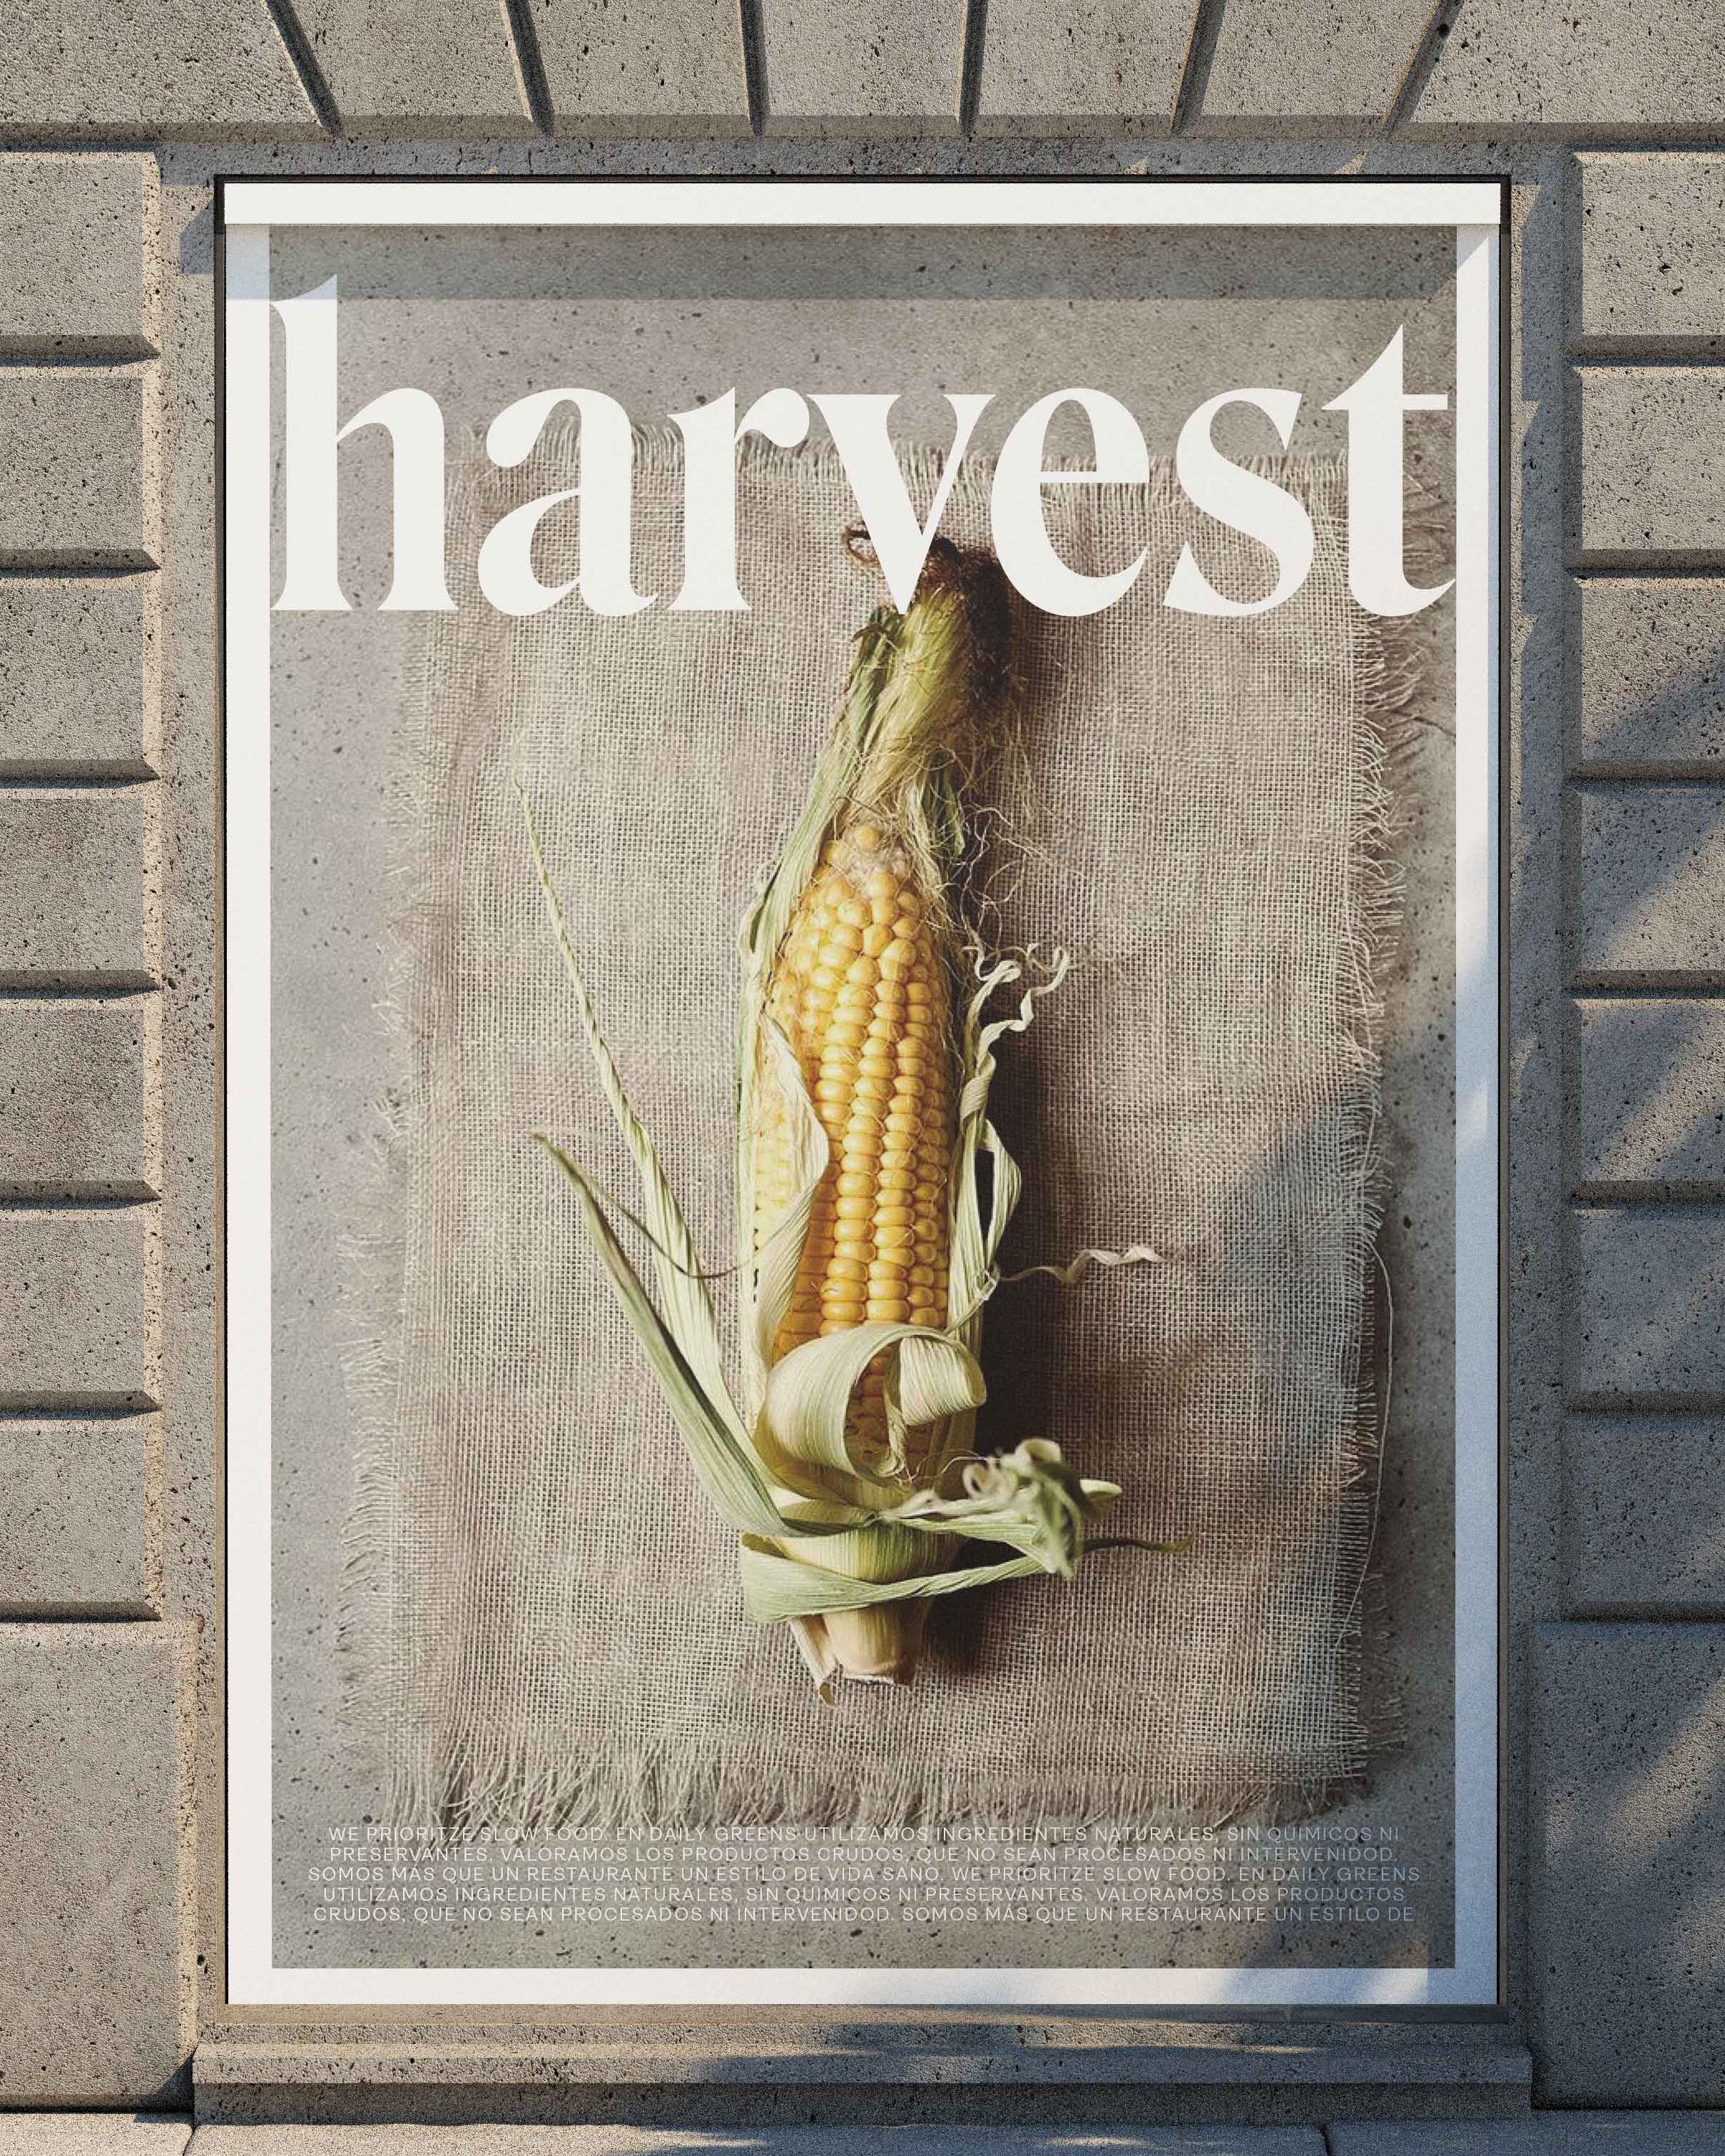 Harvest_flyer 2.jpg